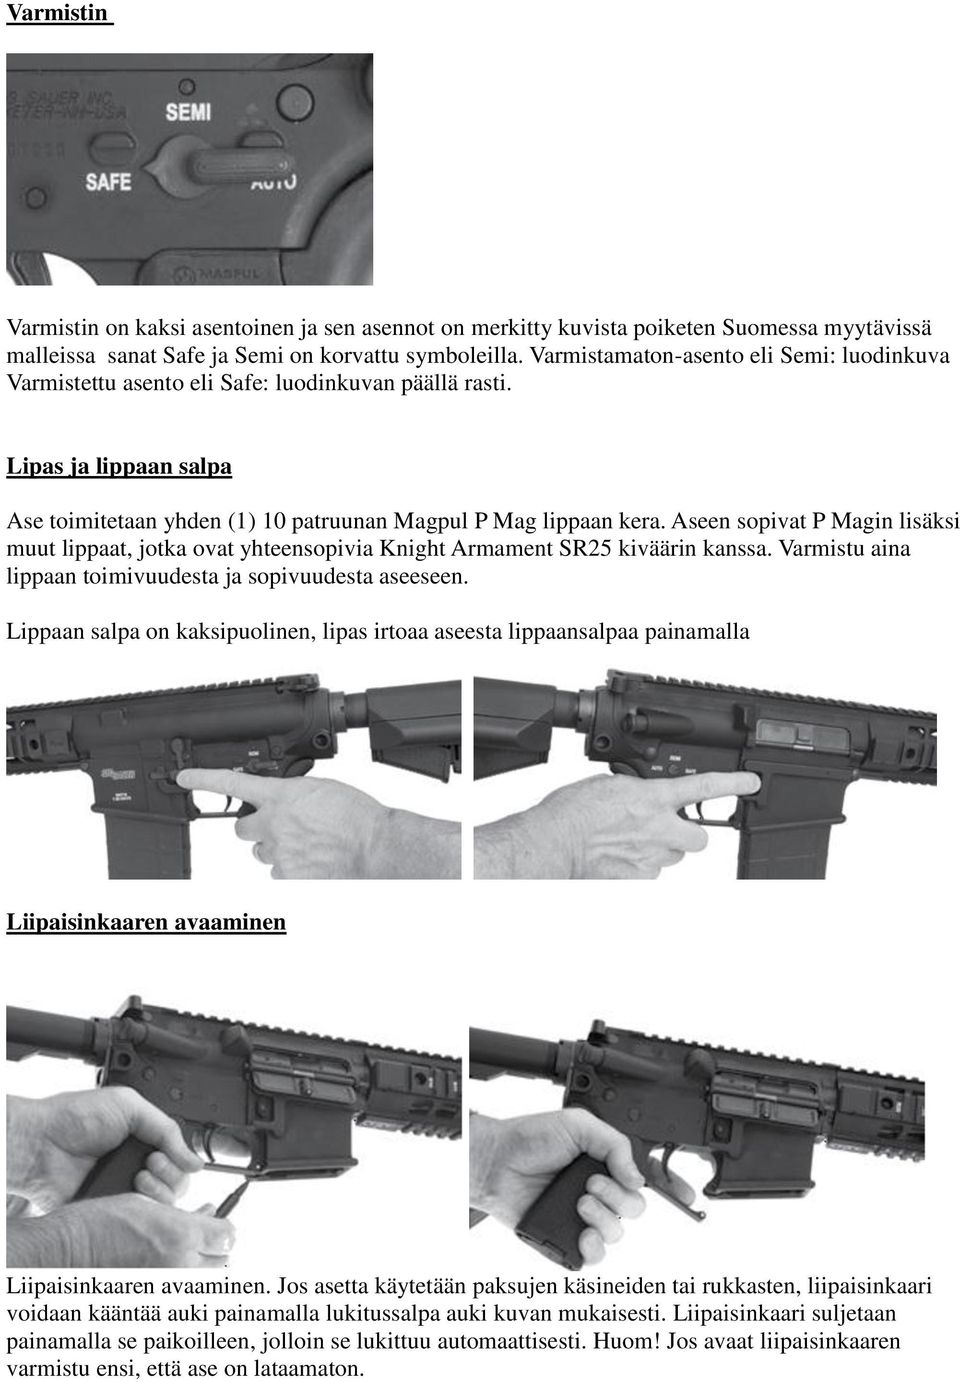 Aseen sopivat P Magin lisäksi muut lippaat, jotka ovat yhteensopivia Knight Armament SR25 kiväärin kanssa. Varmistu aina lippaan toimivuudesta ja sopivuudesta aseeseen.